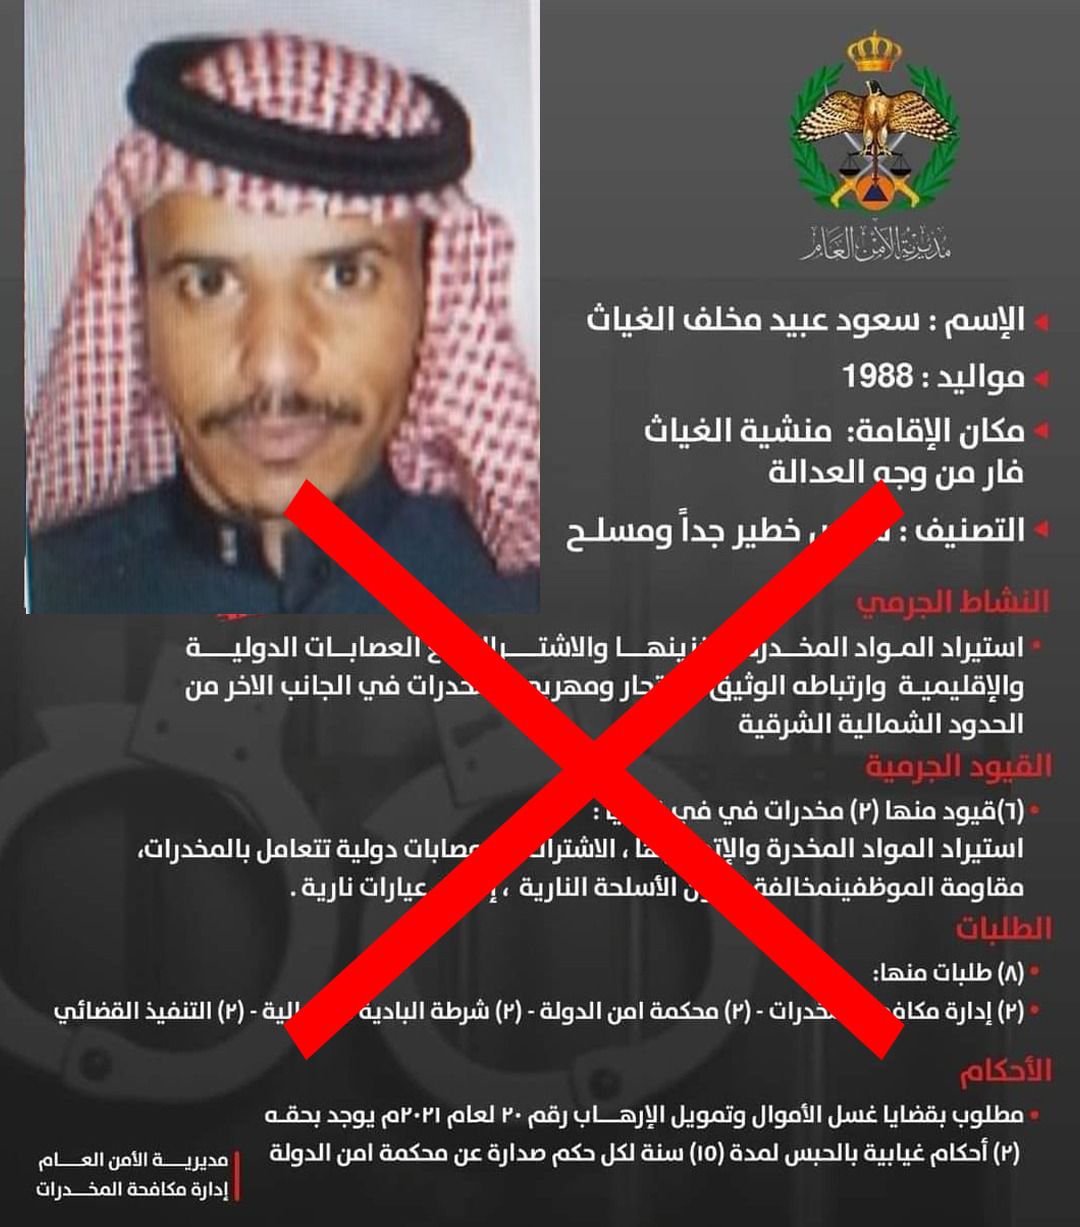 سعود الغياث احد أخطر مطلوبي الرويشد في قبضة الأمن